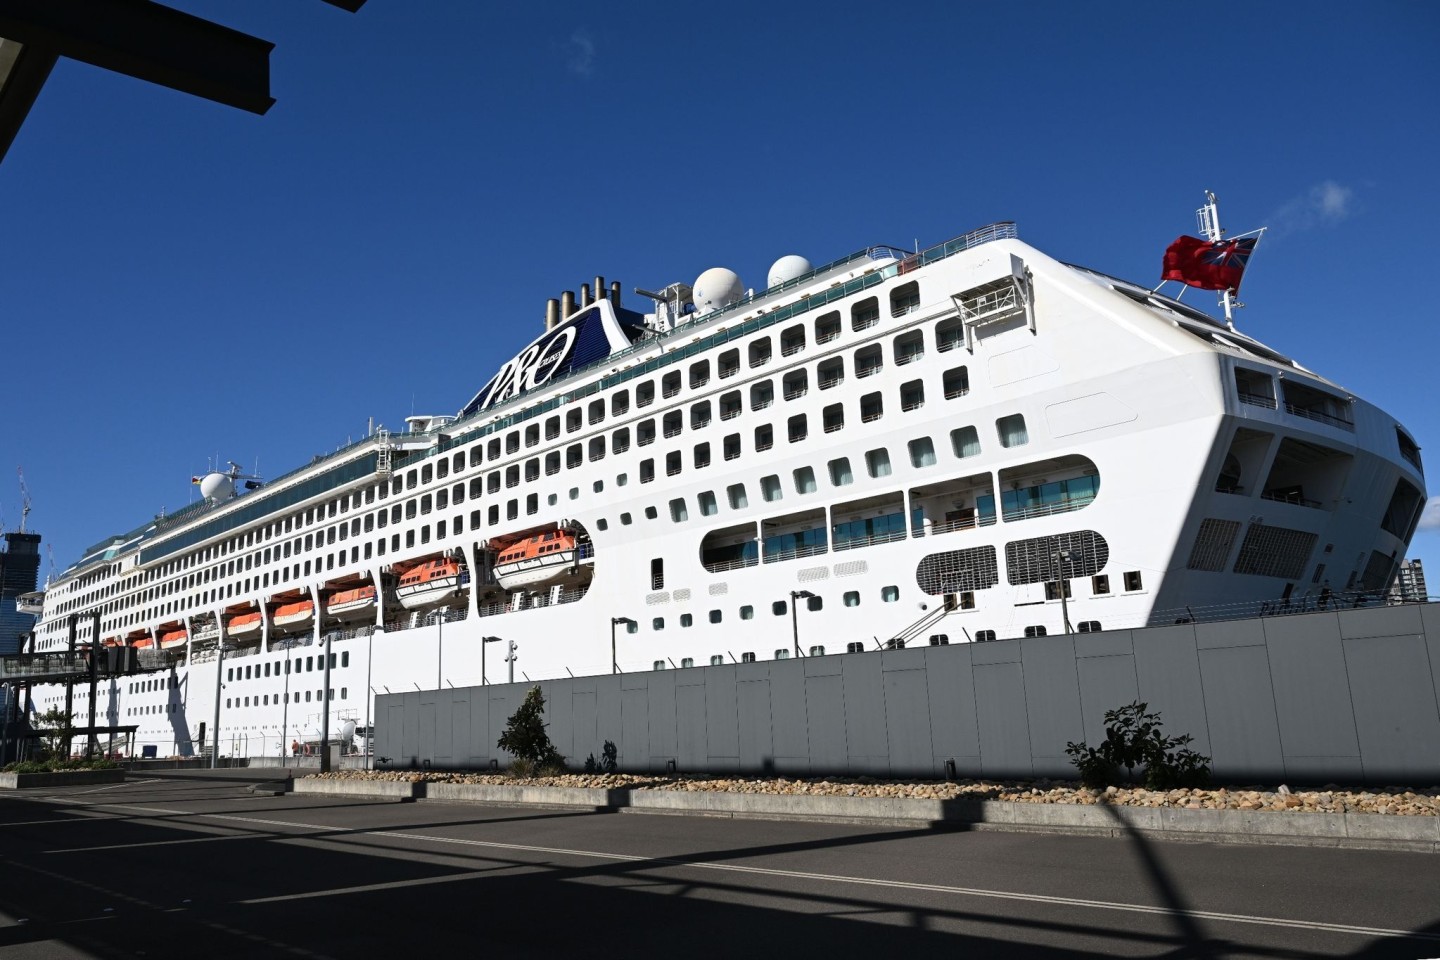 Das Kreuzfahrtschiff Pacific Explorer Cruise liegt im White Bay Cruise Ship Terminal in Sydney.